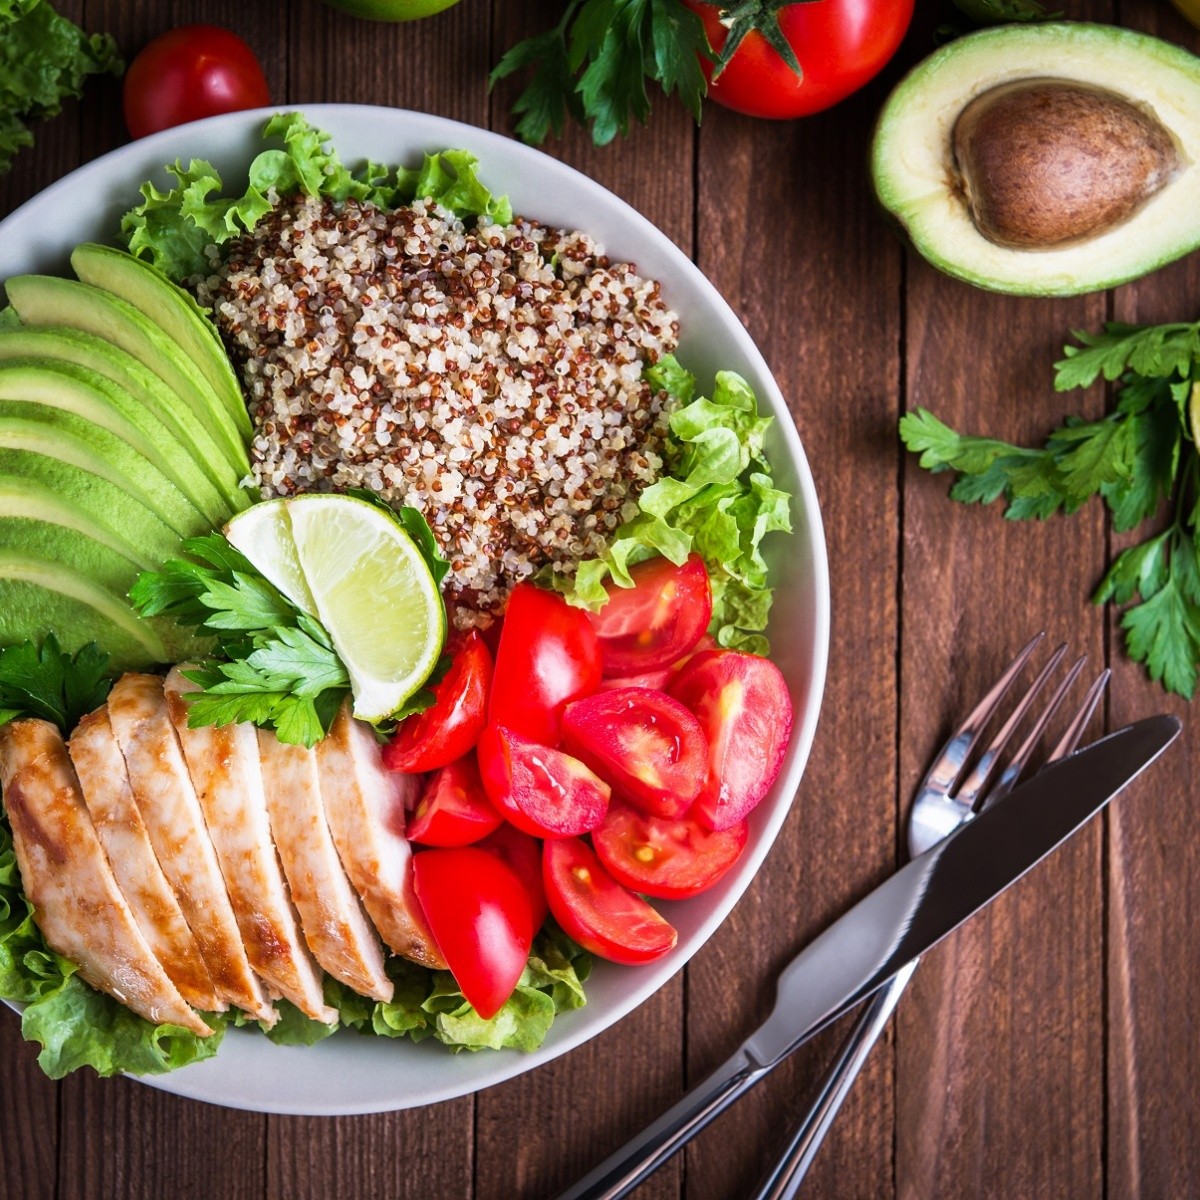 El plato del buen comer: Puede ser el inicio hacia una vida más saludable |  Mundo Sano | Noticias e información para un estilo de vida saludable.